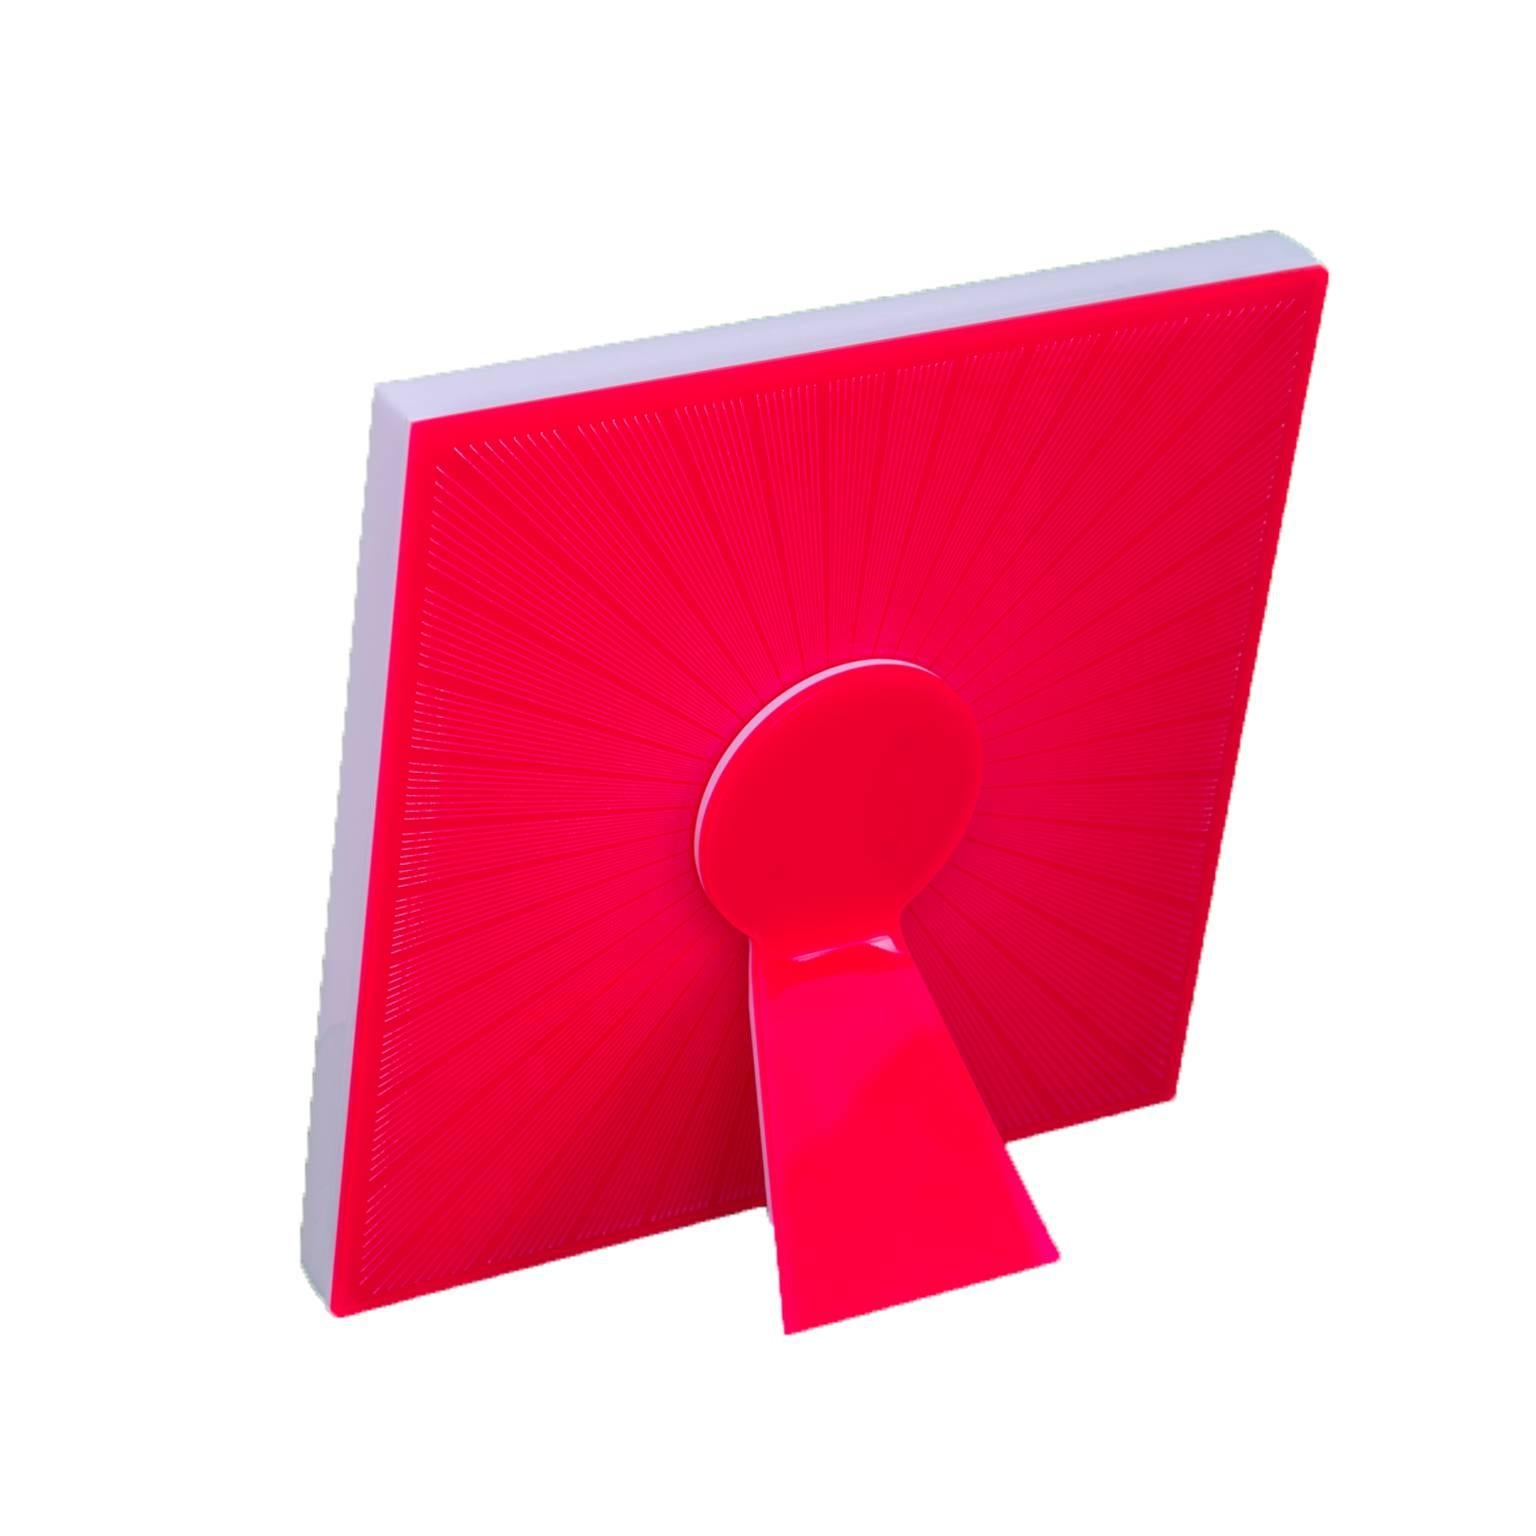 Sharing Red est une édition limitée de l'art avec la collection Heart de cadres photo pop recto-verso de Laura G Italy. Il est beau où que vous le regardiez, sa surface est décorée à l'avant et à l'arrière, un exemple typique de cadre photo Art with